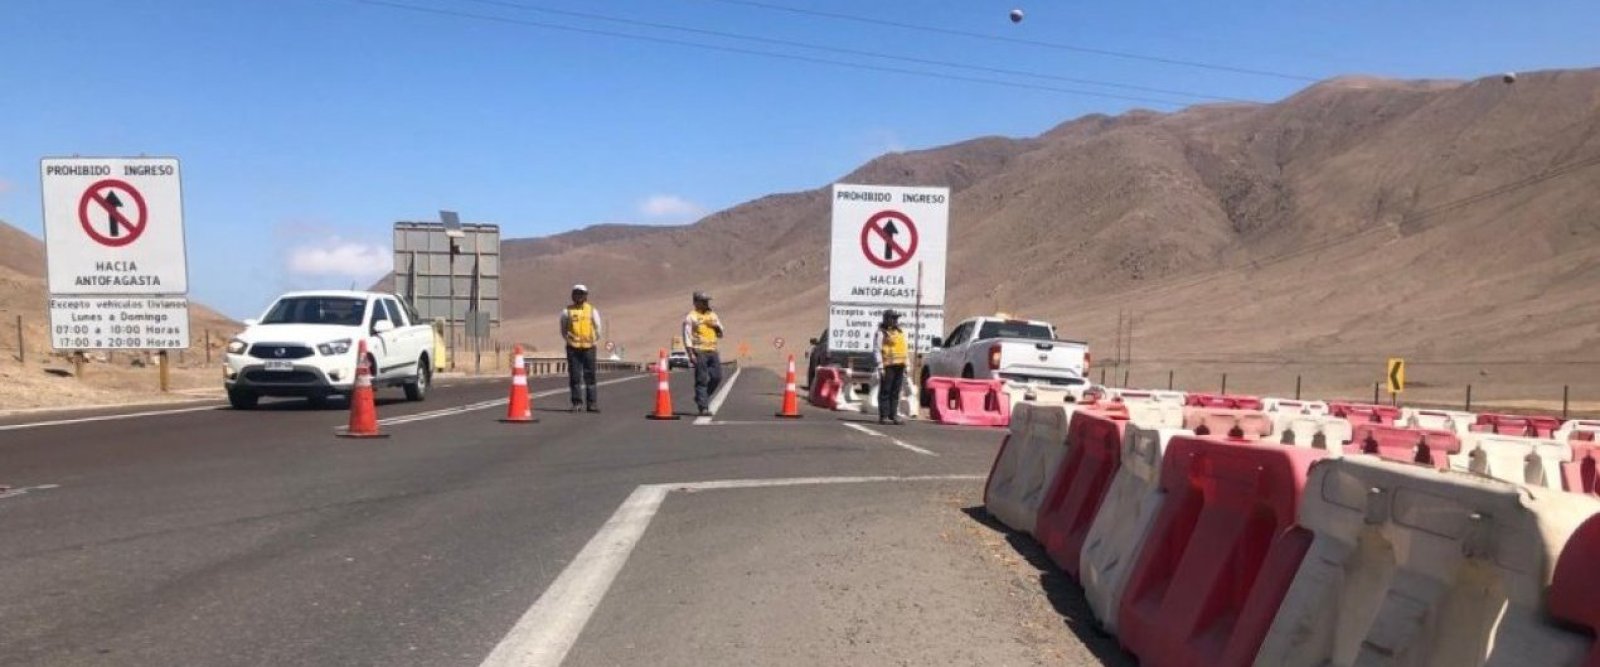 Antofagasta: Anuncian control vehicular 24/7 para evitar ingreso de camiones por Ruta 26